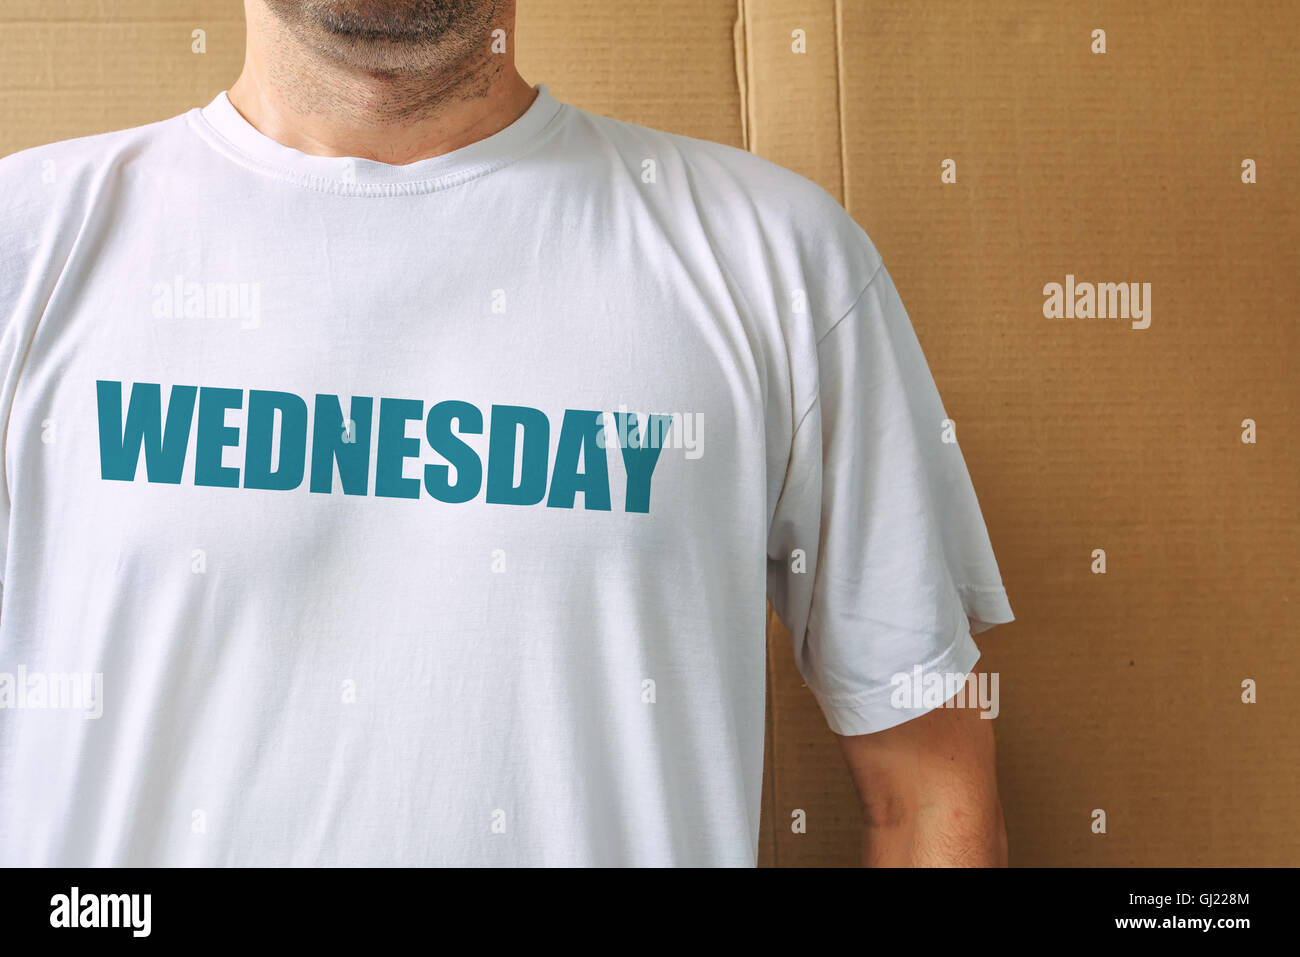 Jours de la semaine - mercredi, l'homme portant des T-shirt blanc avec le nom du troisième jour de la semaine imprimé Banque D'Images